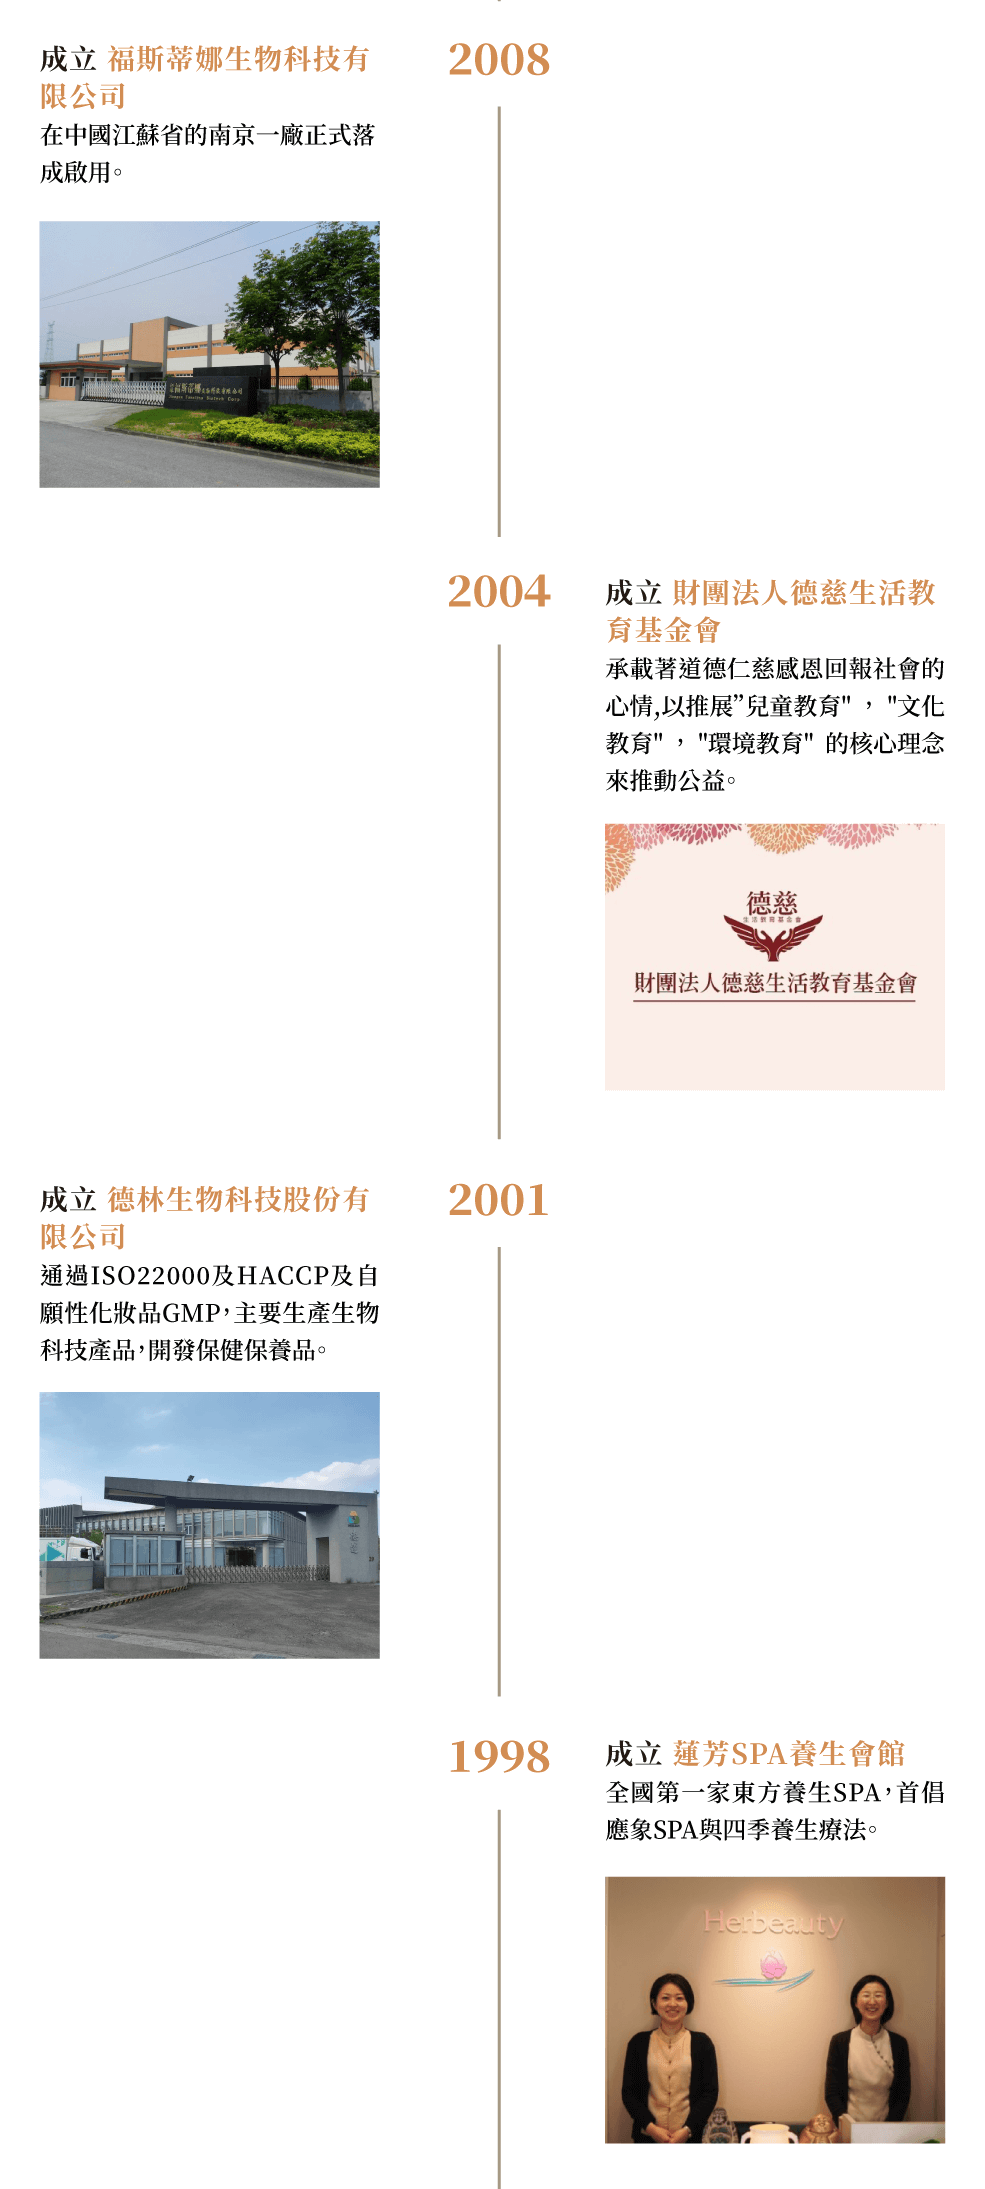 1998-2008年間成立蓮芳養生會館首倡應象SPA與四季養生療法，並成立德林專注開發保健保養品，創立德慈教育基金會推動公益，以及在中國江蘇成立福斯蒂娜有限公司